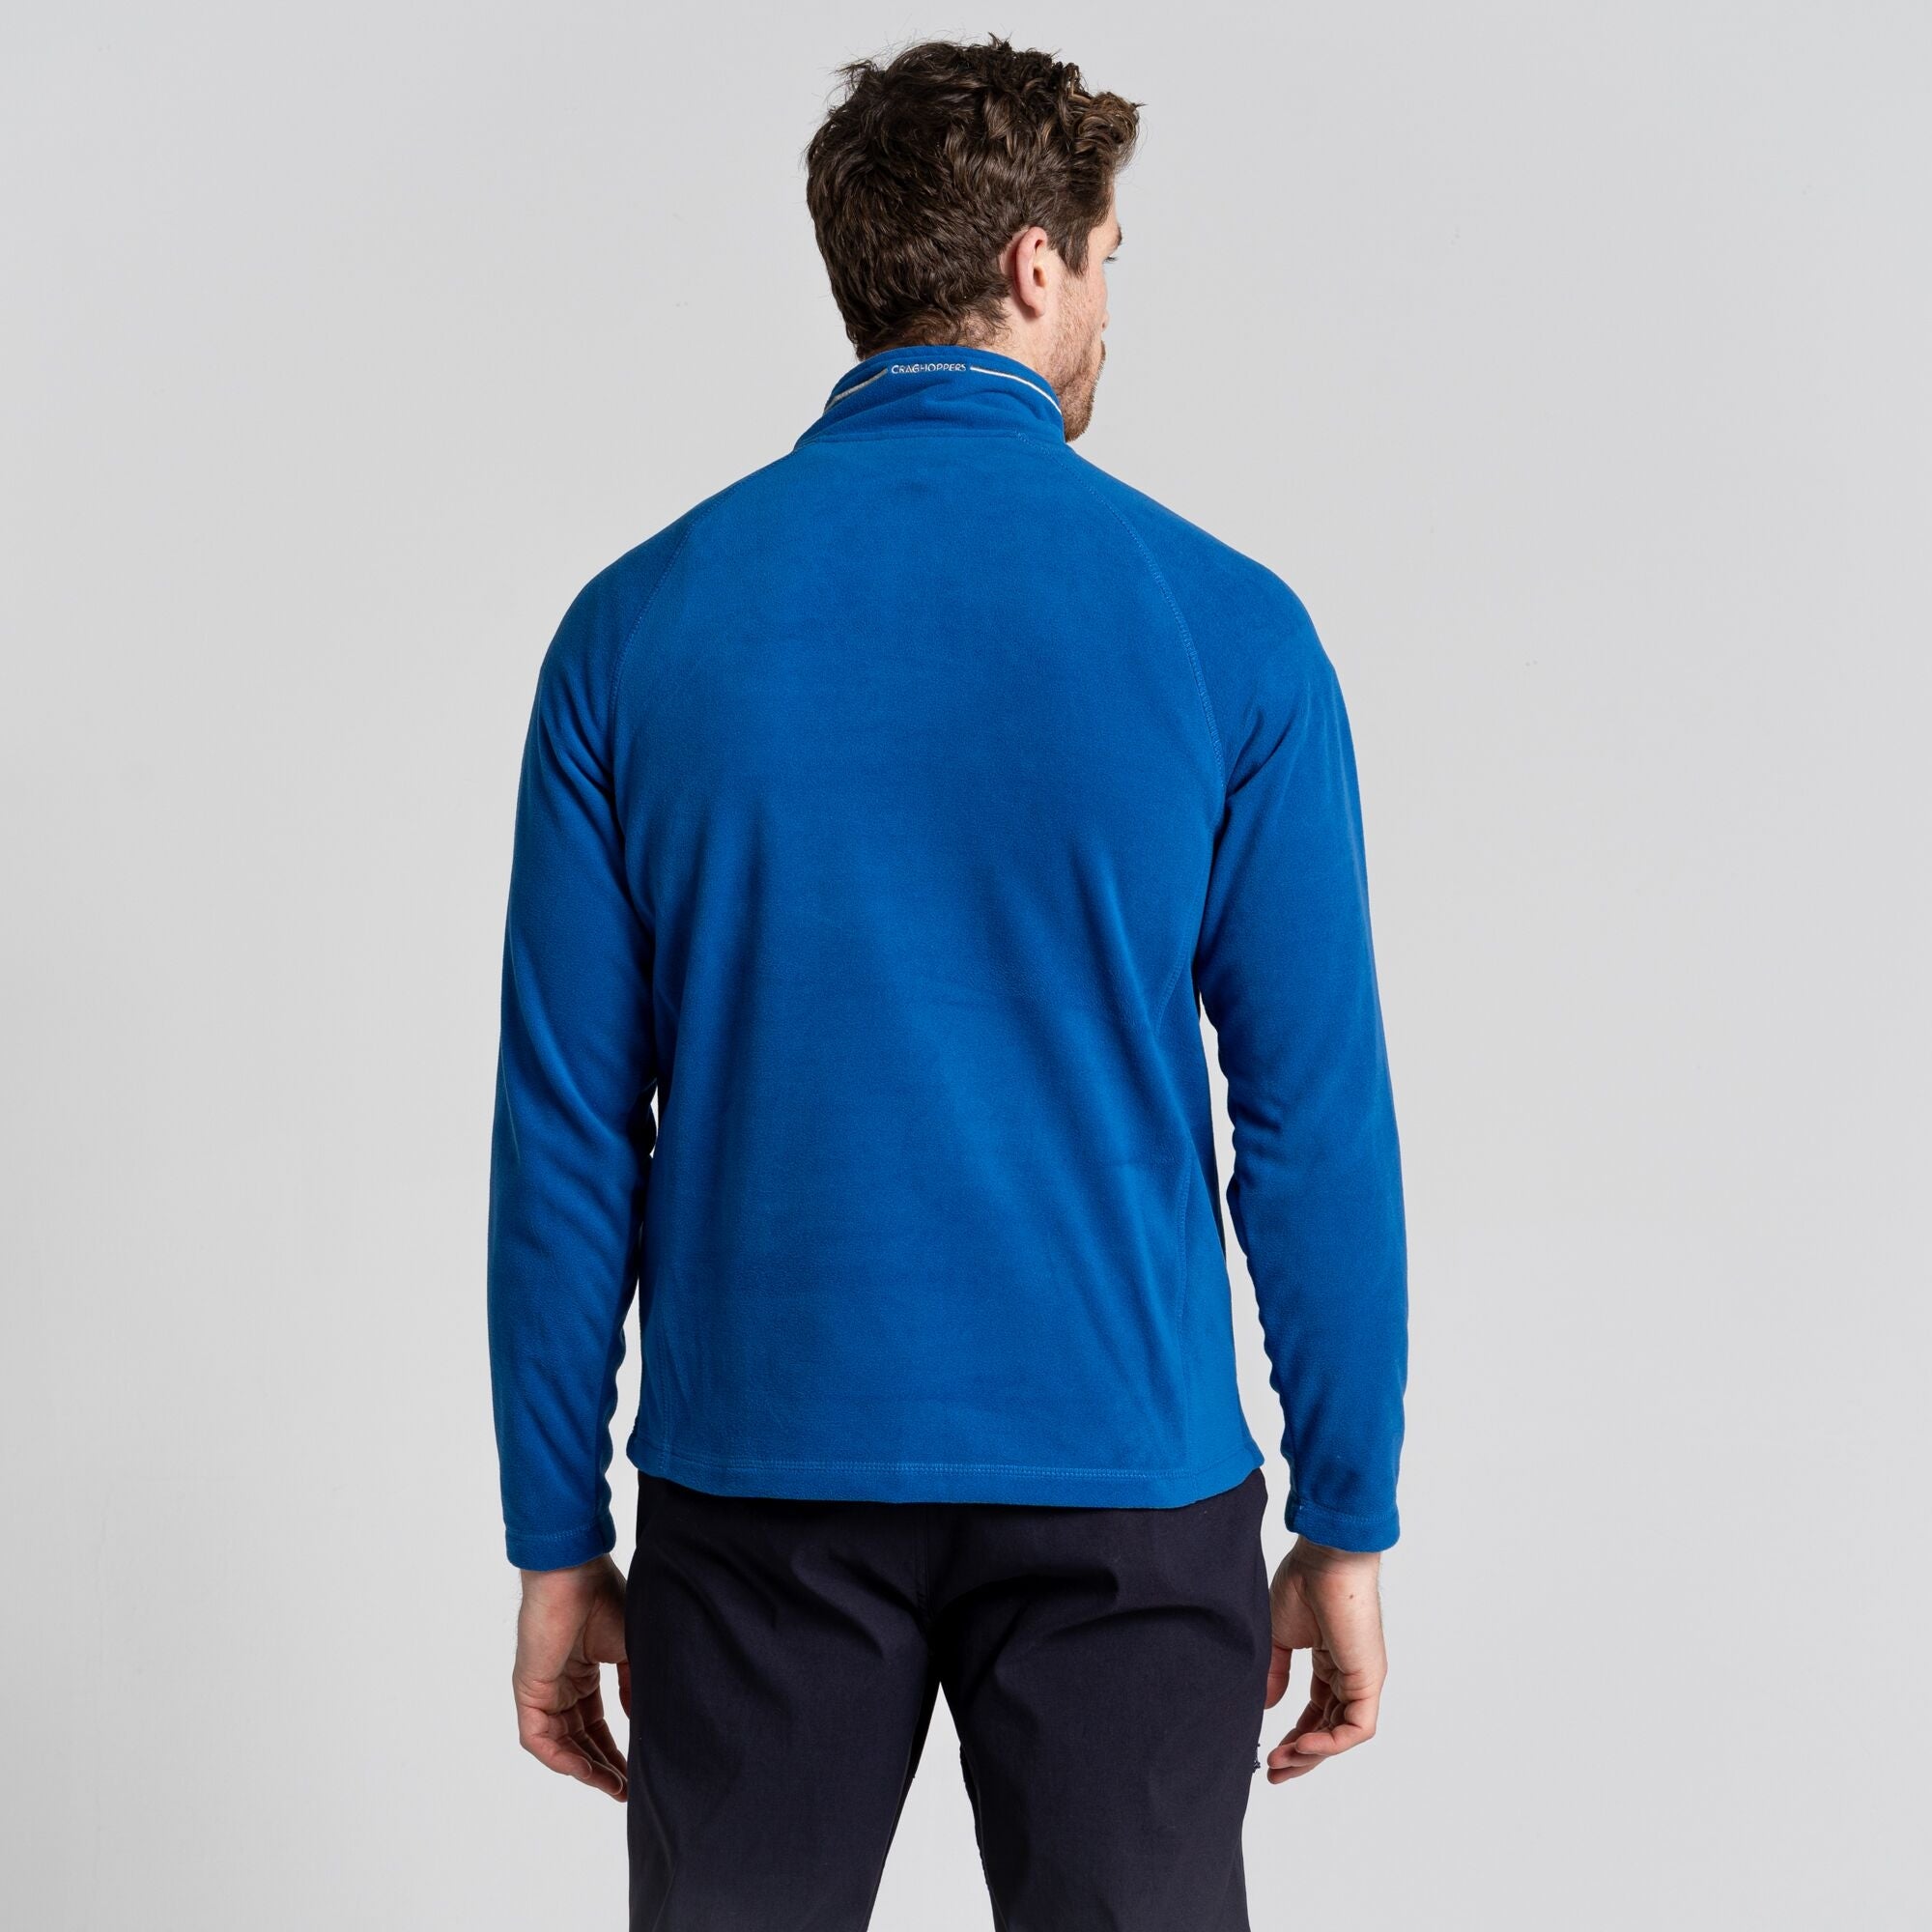 Men's Corey Half Zip Fleece | Picotee Blue